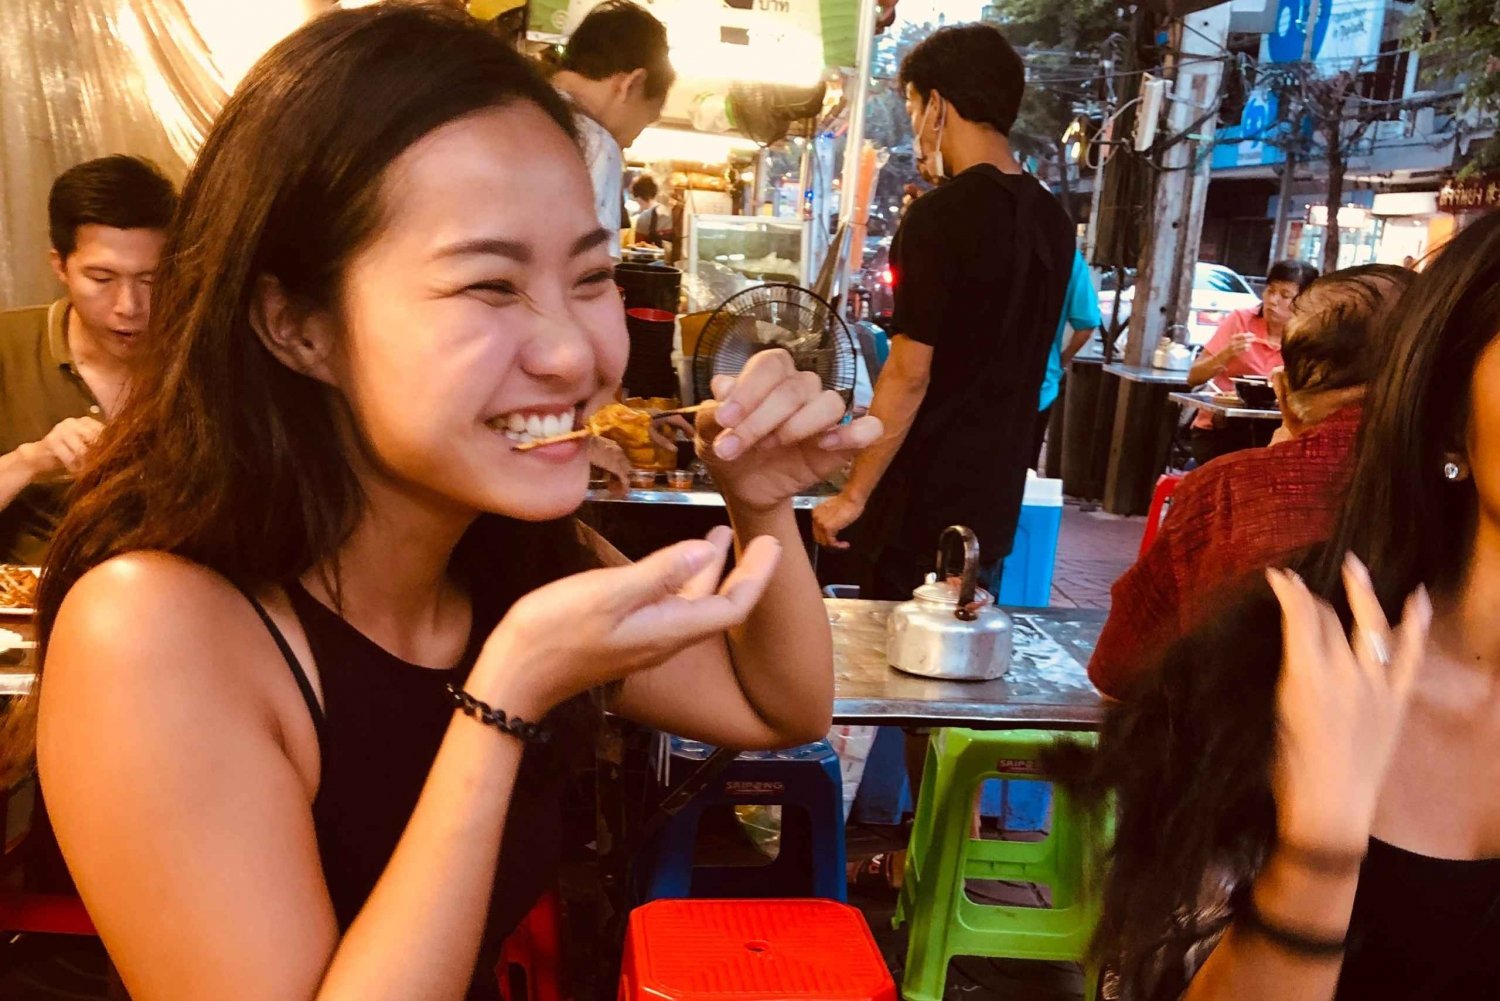 Bangkok: Den utrolige madvandring med smagsprøver